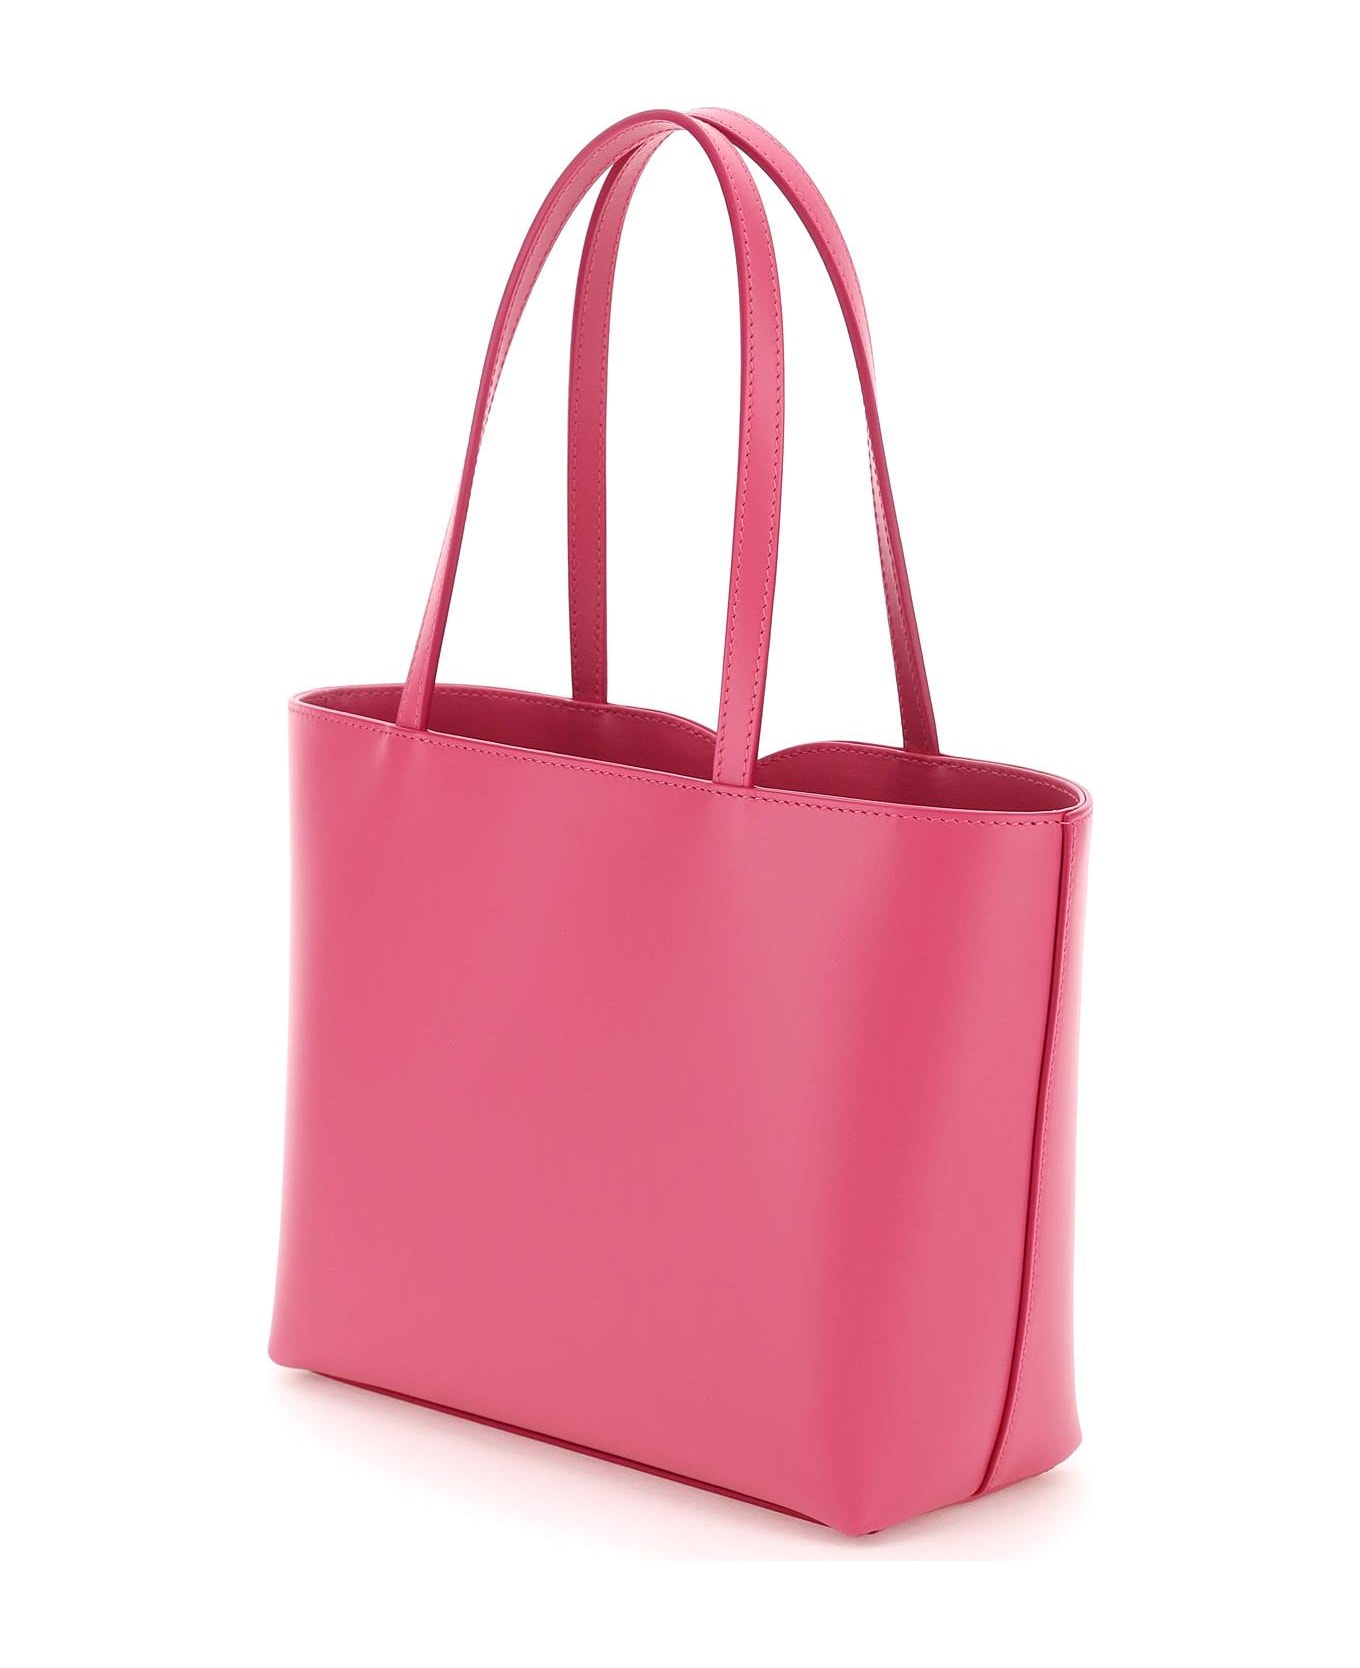 Dolce & Gabbana Shopping Bag - Glicine